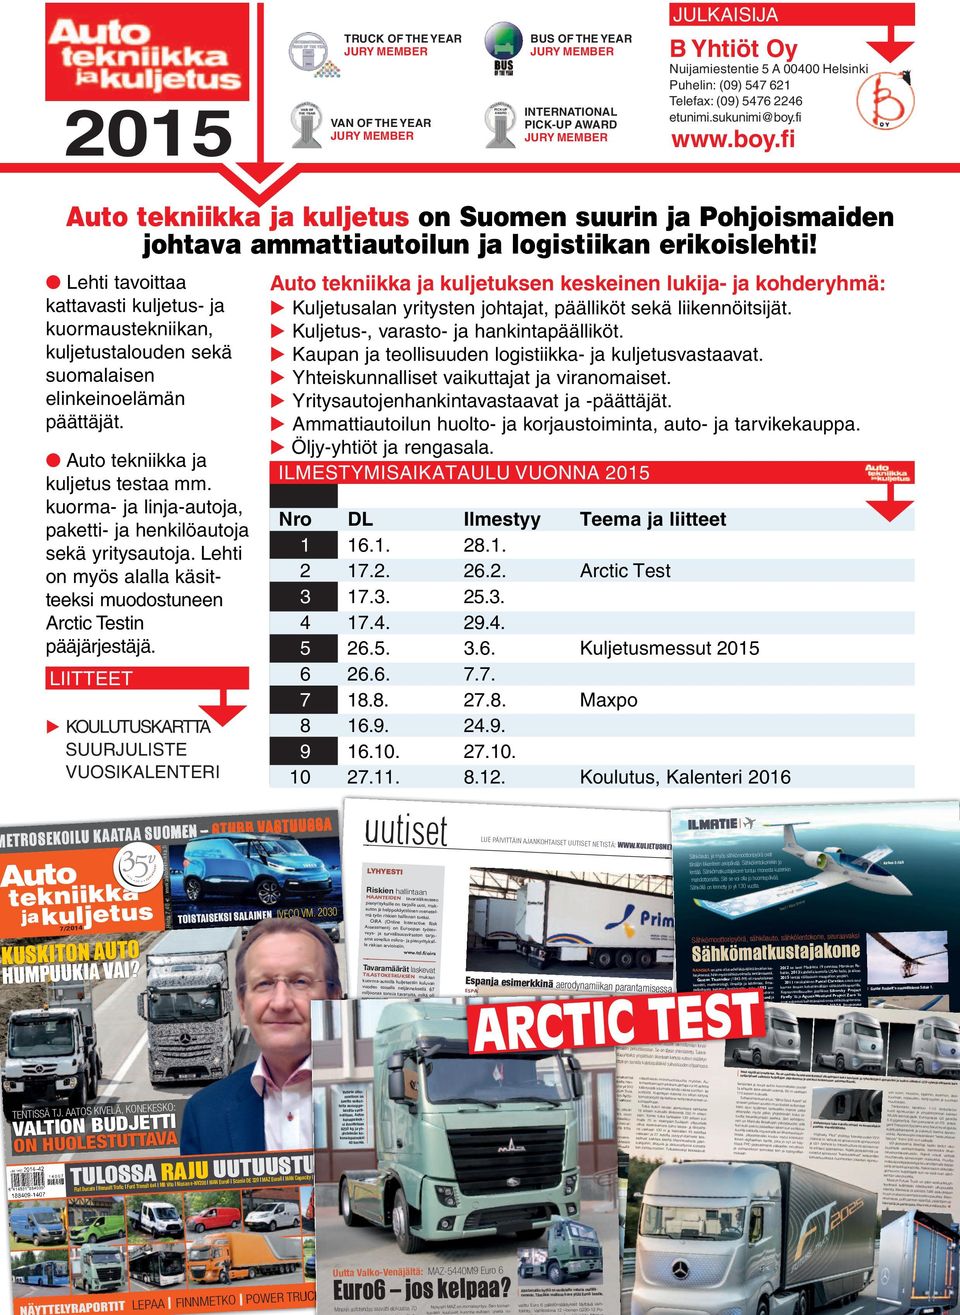 Lehti tavoittaa kattavasti kuljetus- ja kuormaustekniikan, kuljetustalouden sekä suomalaisen elinkeinoelämän päättäjät. Auto tekniikka ja kuljetus testaa mm.